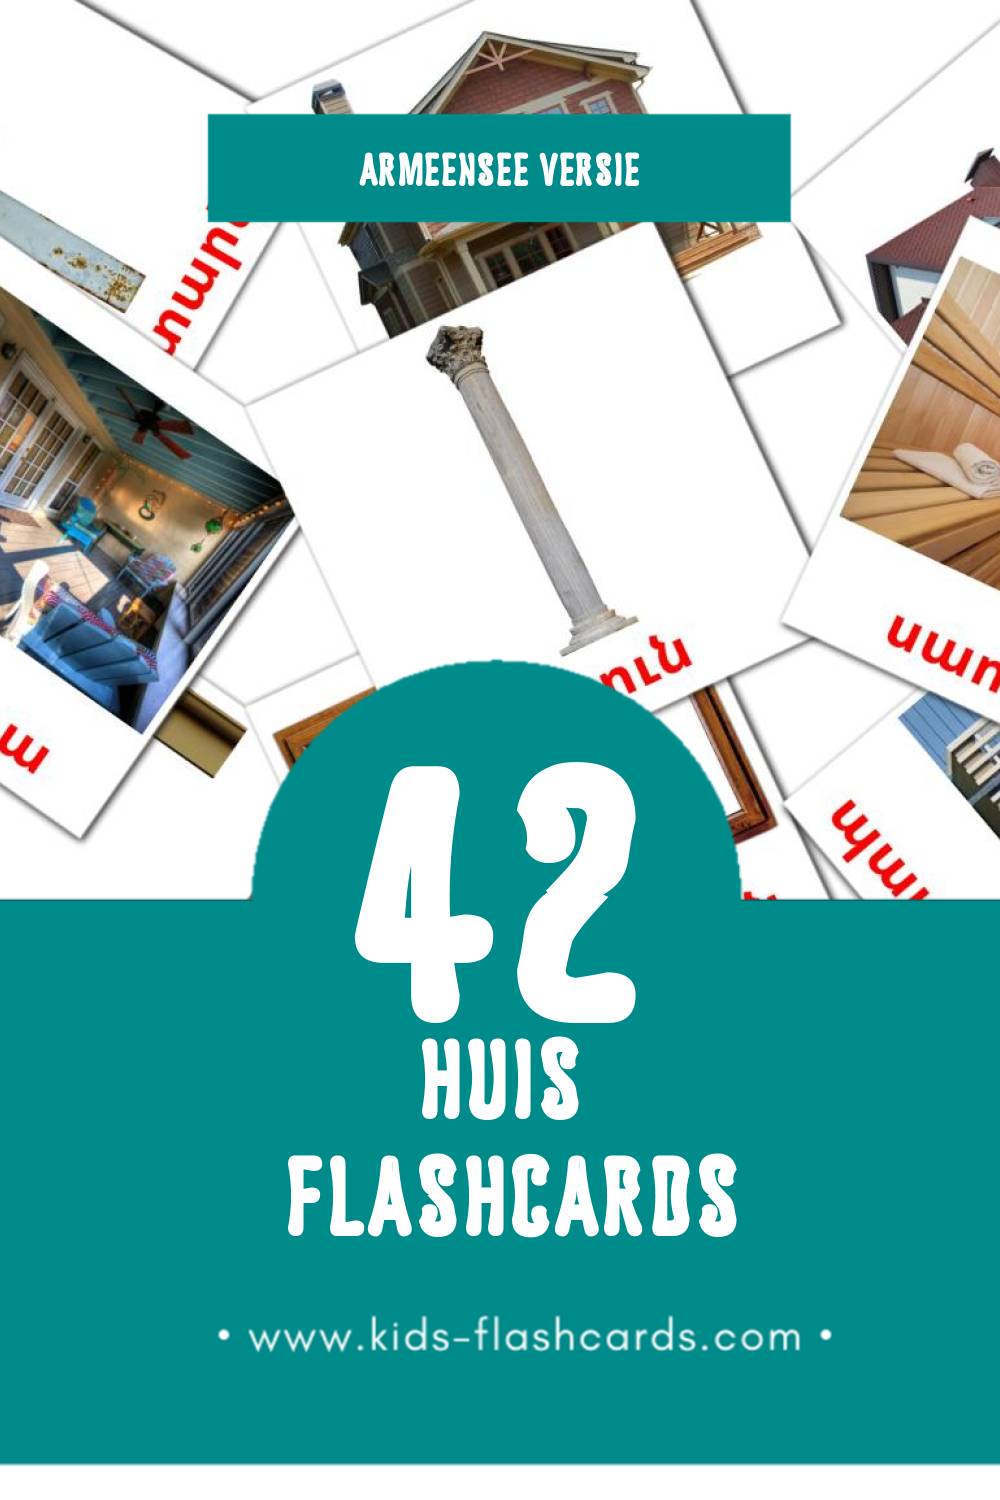 Visuele տուն Flashcards voor Kleuters (70 kaarten in het Armeense)